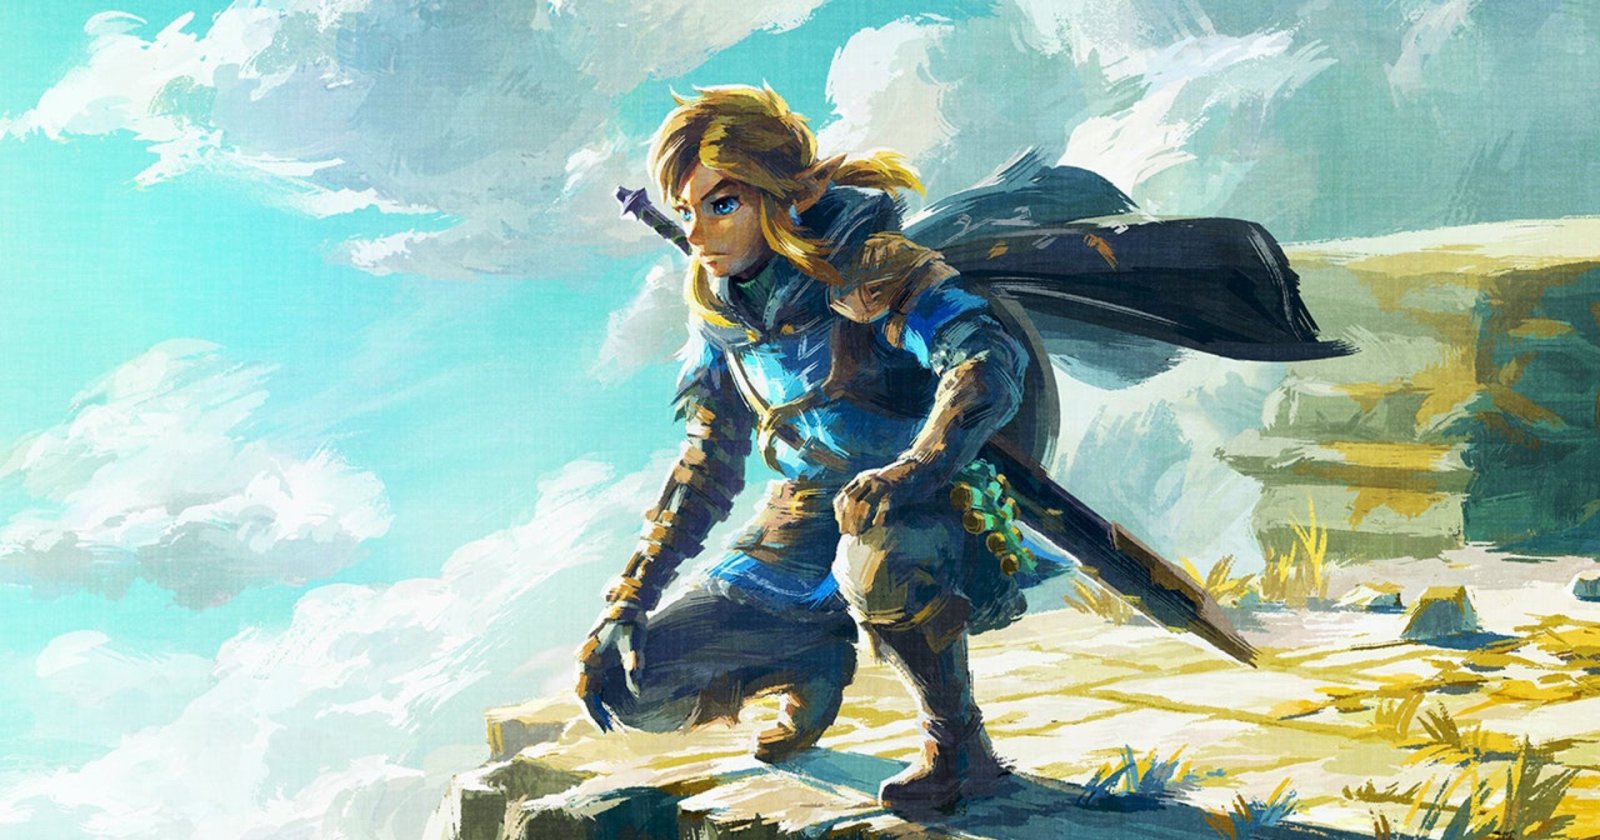 Nintendo ยืนยัน เดินหน้าพัฒนา ‘The Legend of Zelda’ เวอร์ชันไลฟ์แอ็กชันอย่างเป็นทางการ